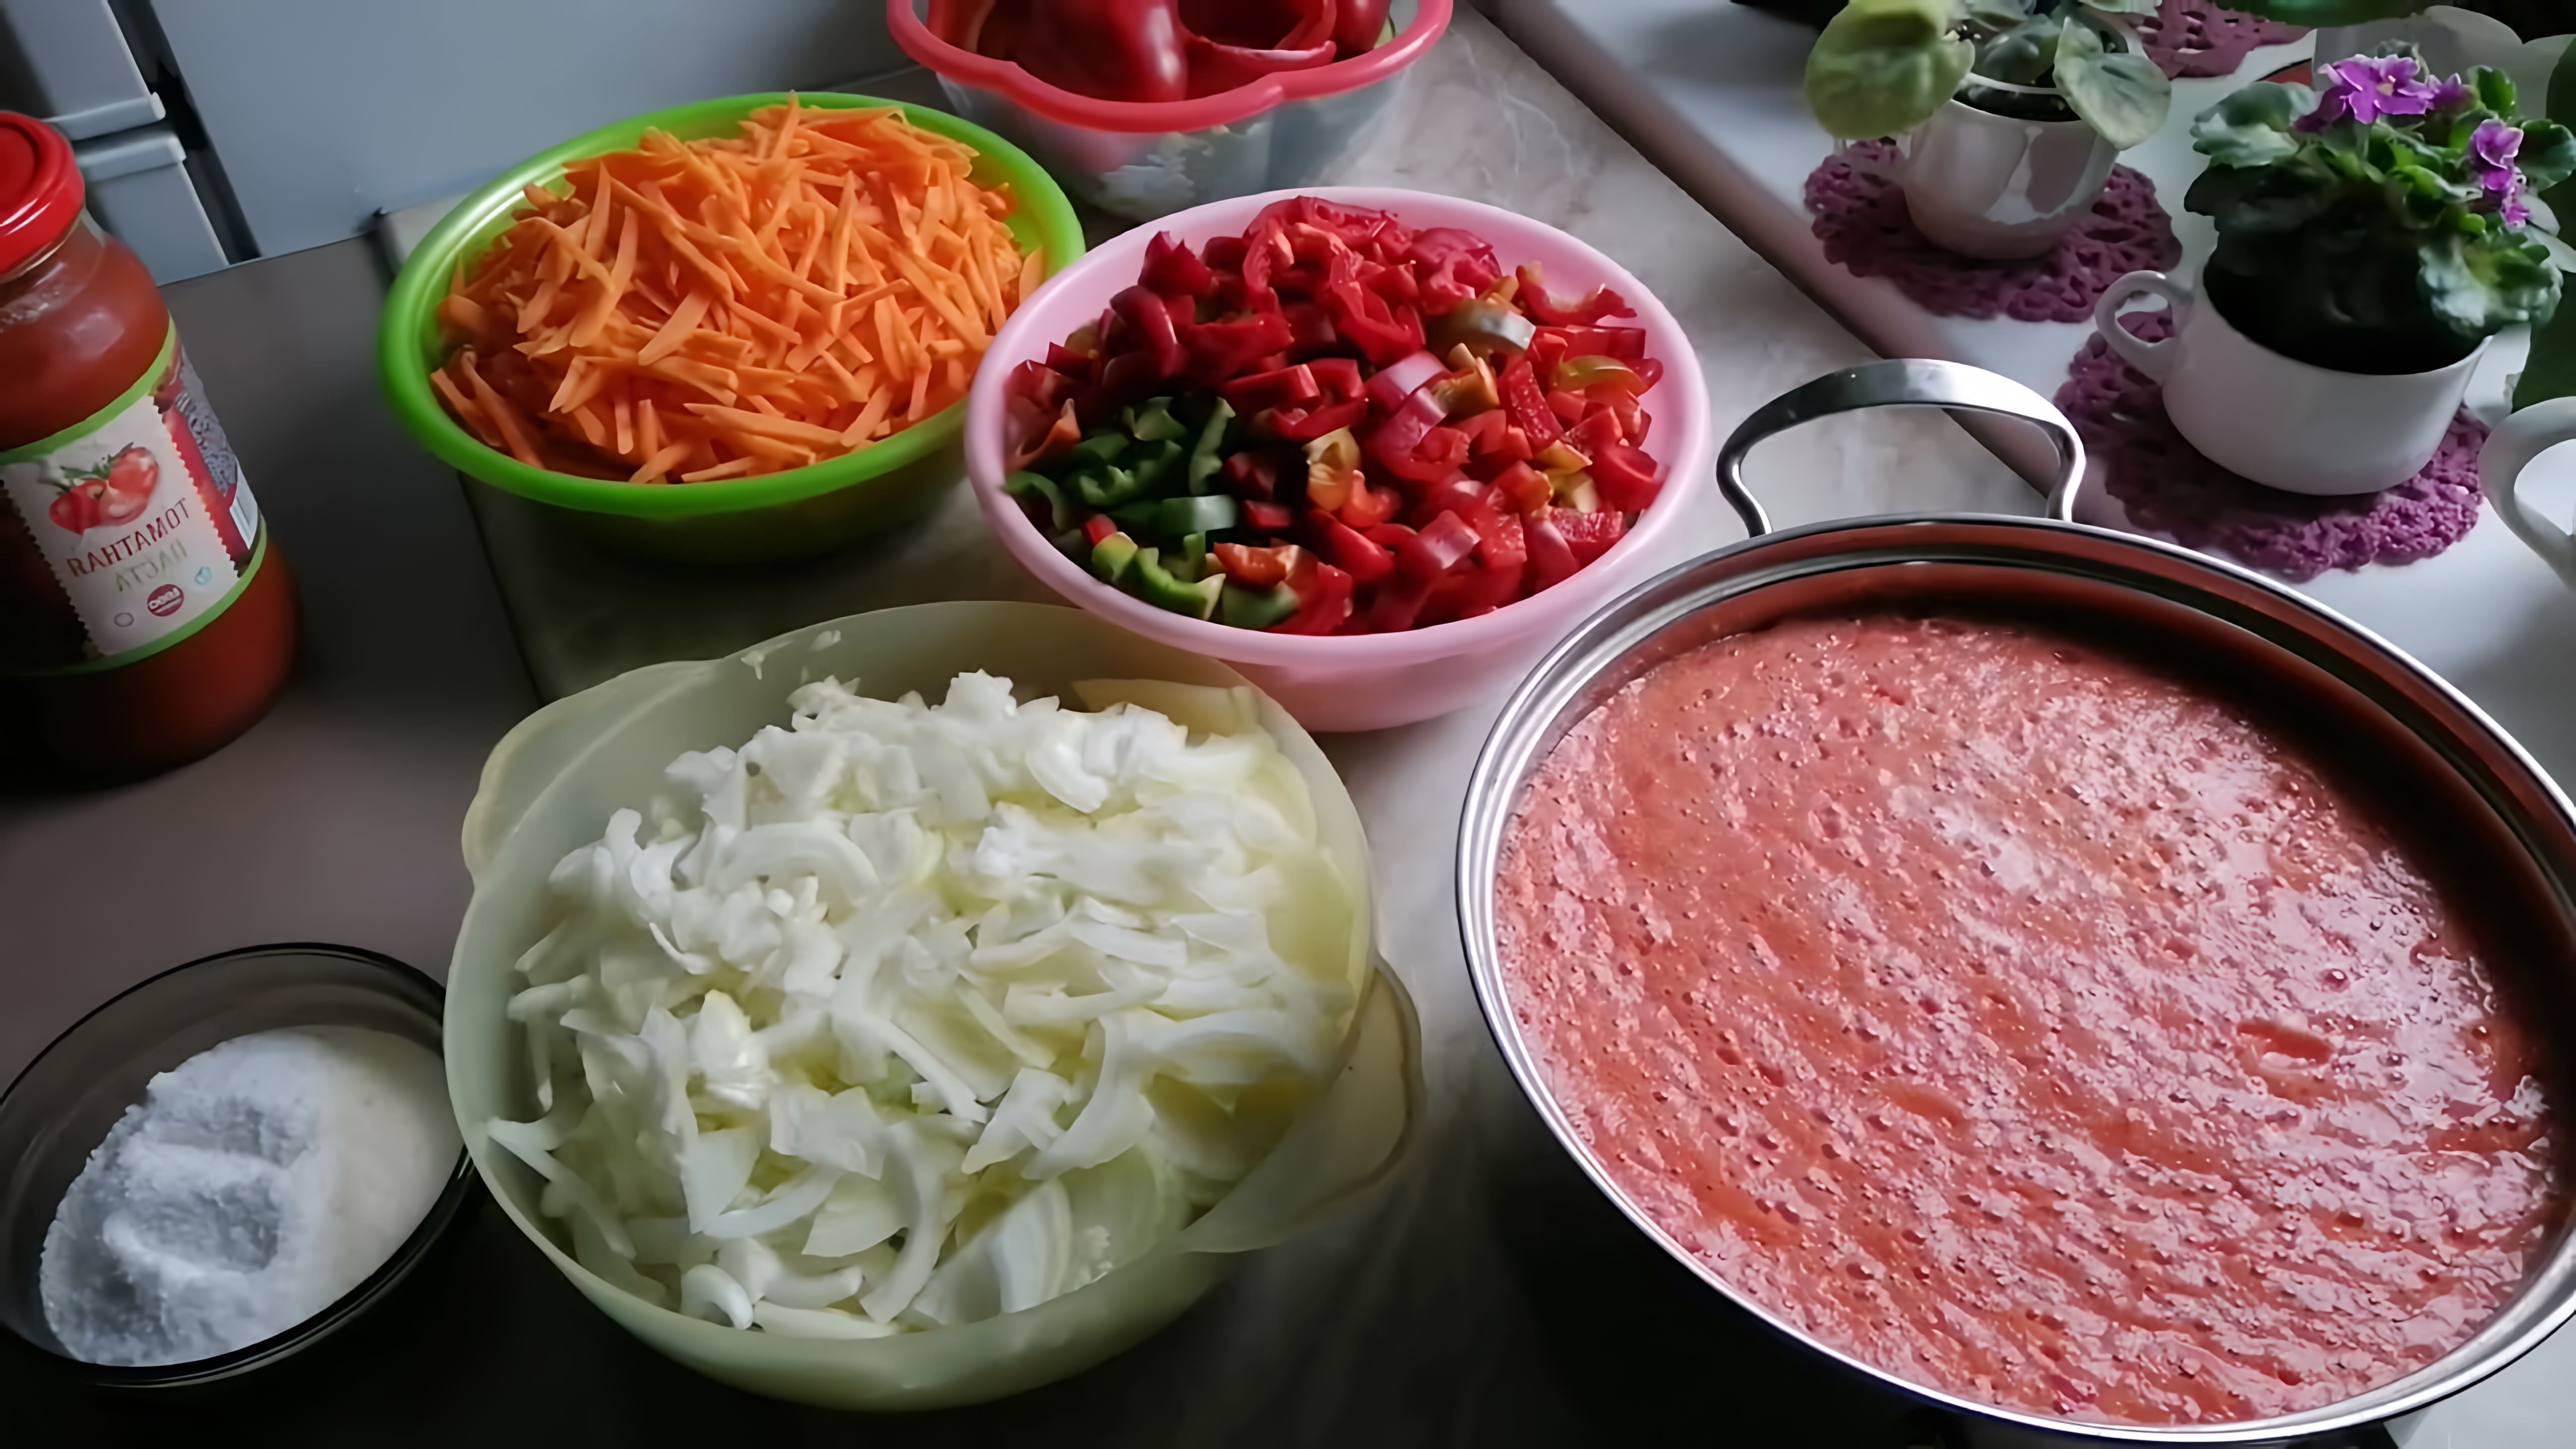 В этом видео женщина рассказывает о процессе приготовления лечо - болгарского блюда из помидоров, перца, моркови и лука